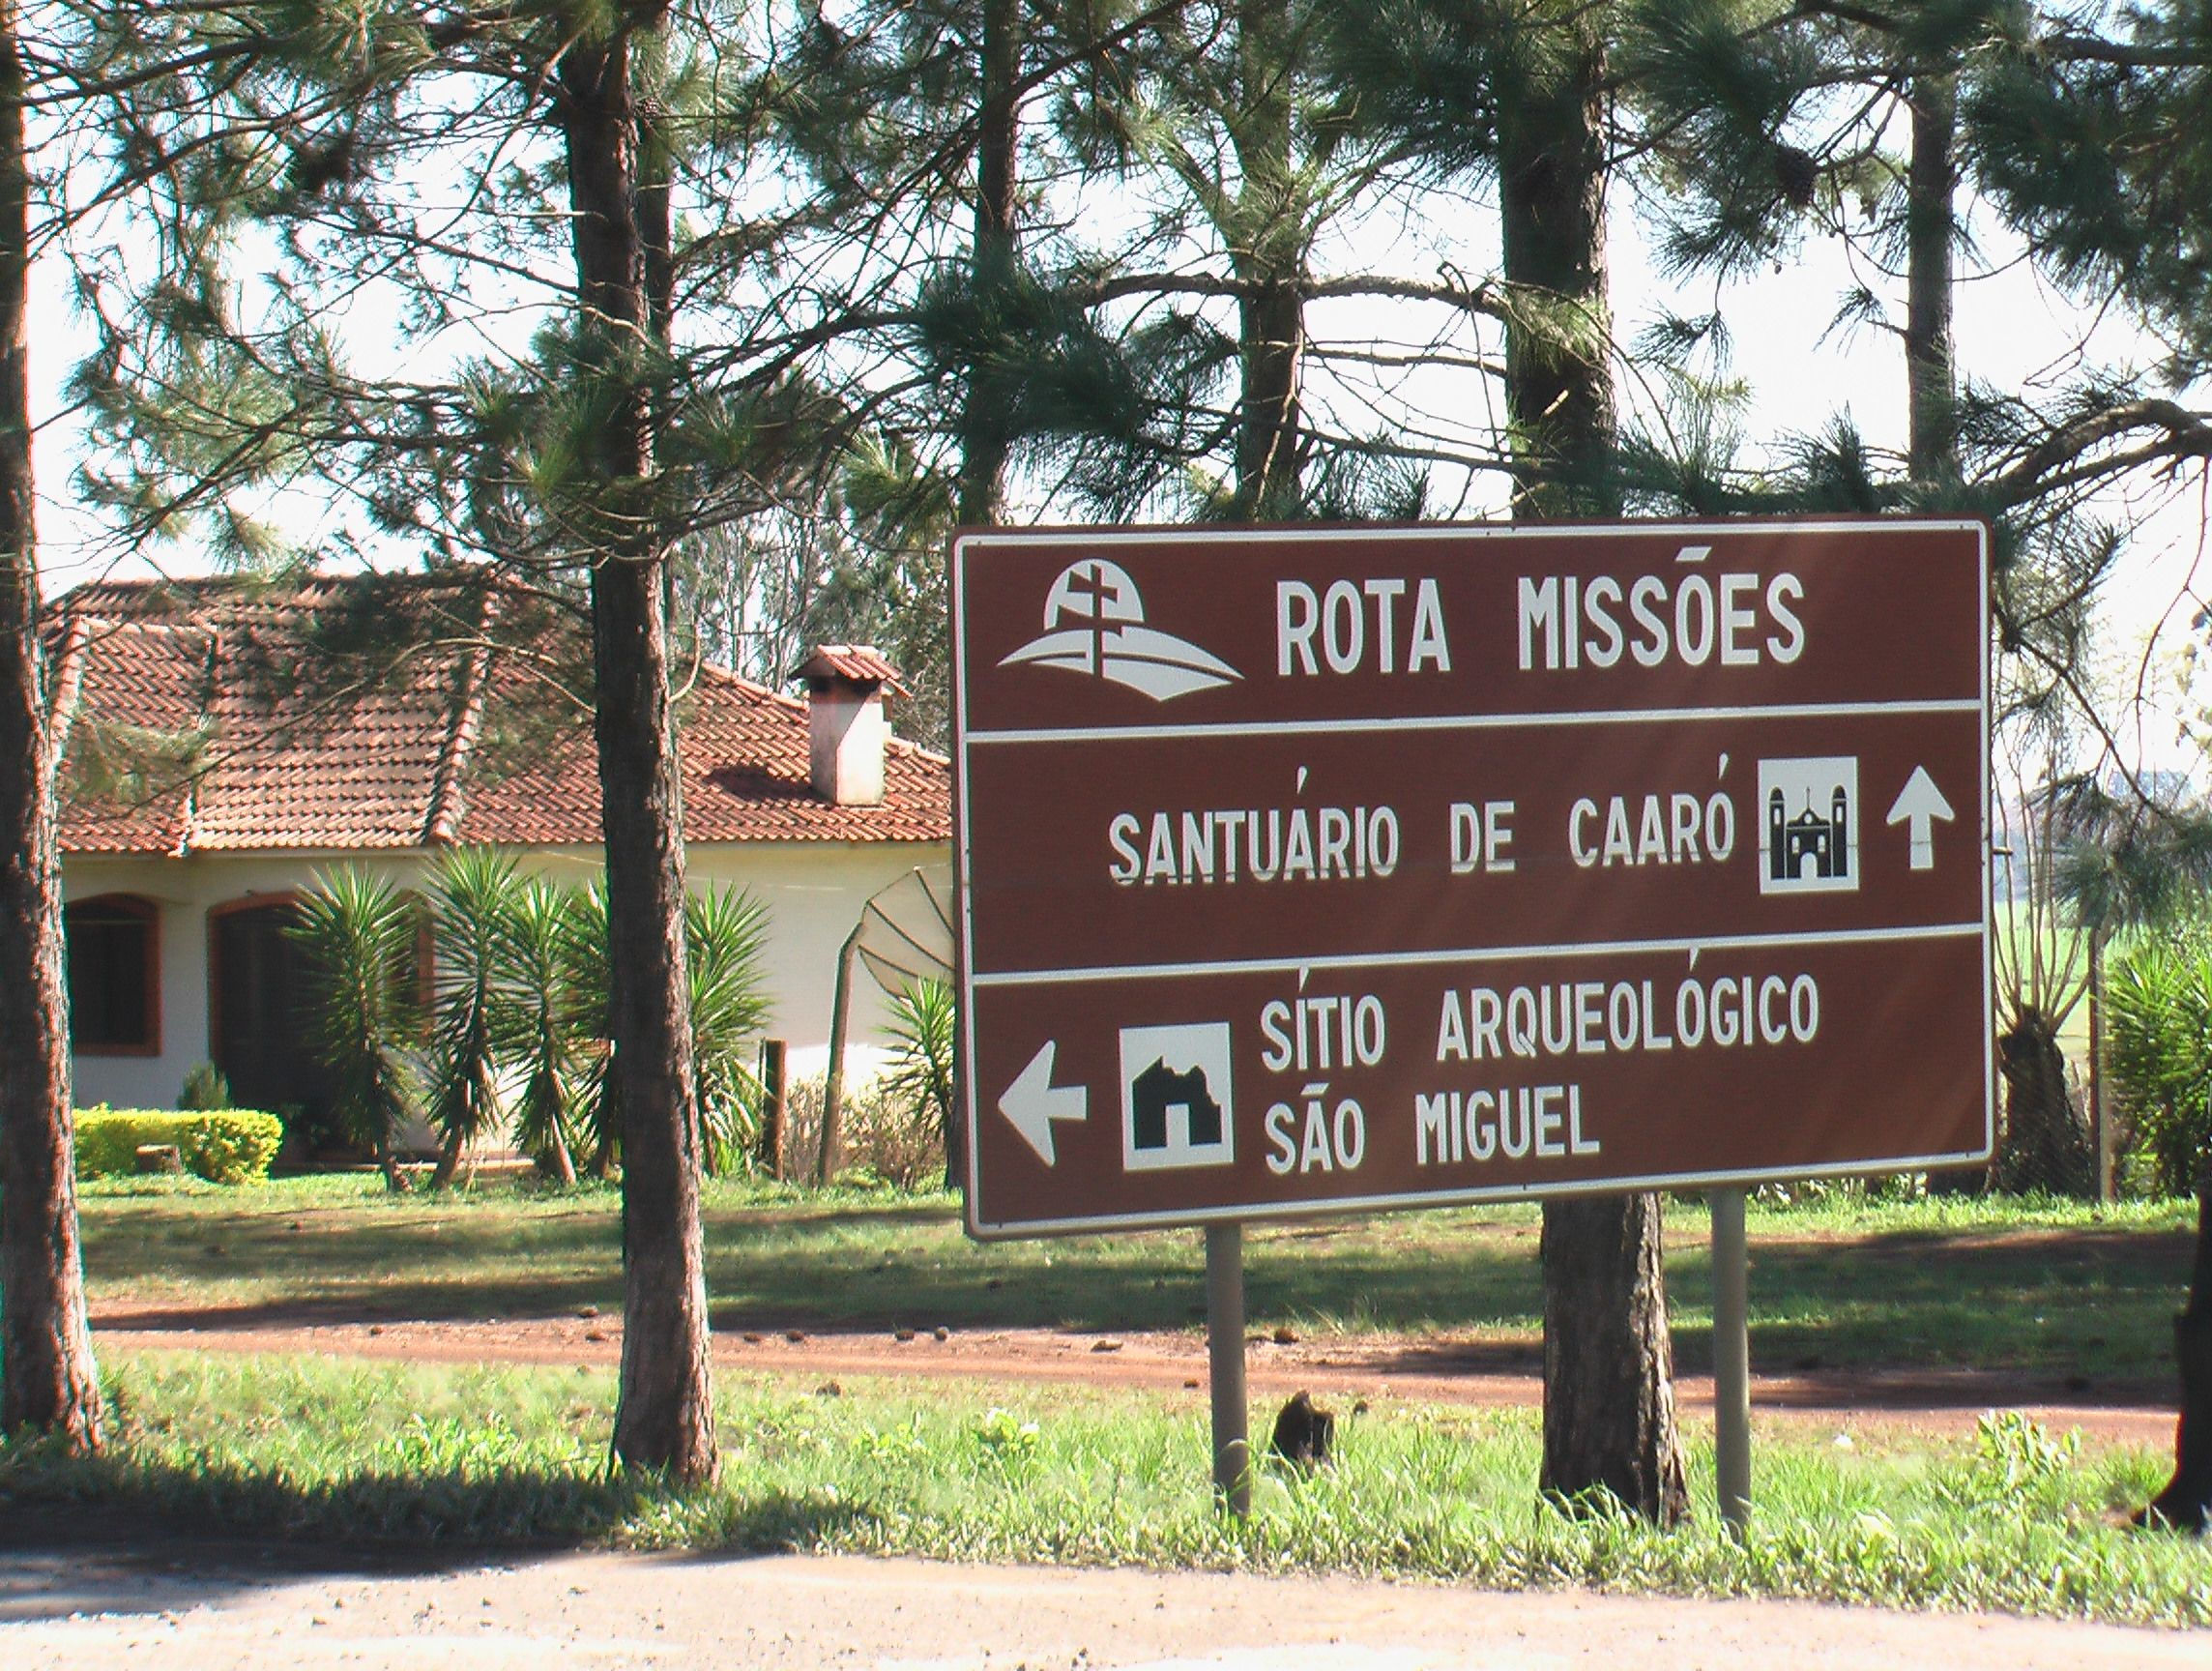 Fléchage des Missions Guaranis